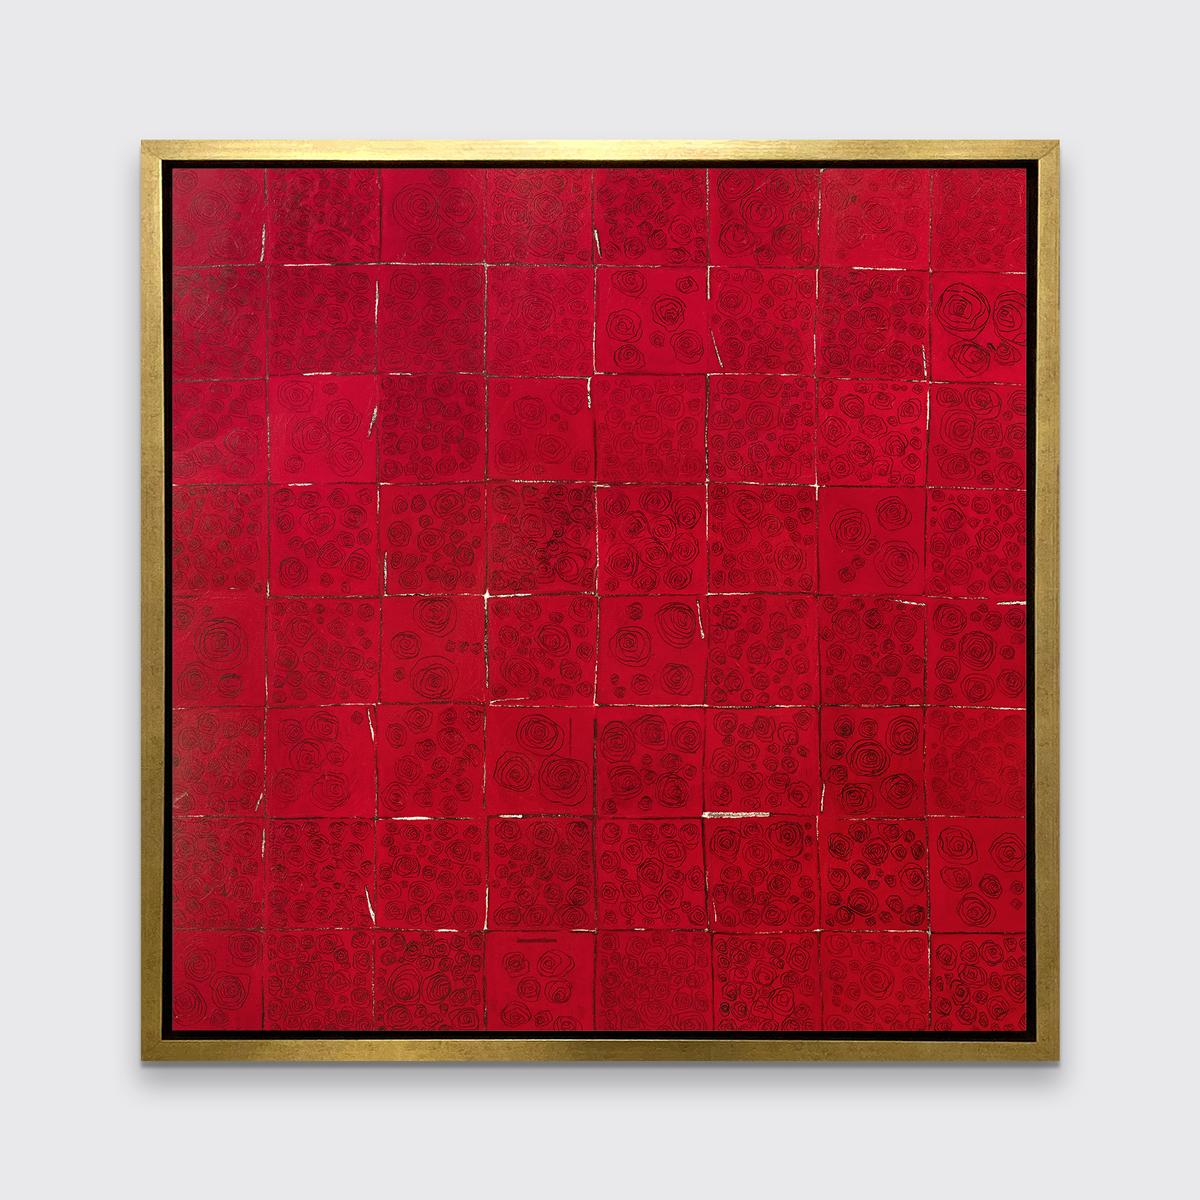 Cette impression abstraite à tirage limité de Sofie Swann présente une composition de motifs carrés d'un rouge profond, avec des dessins abstraits et fins de lignes noires de roses dans chaque carré. Les contours carrés sont pour la plupart sombres,